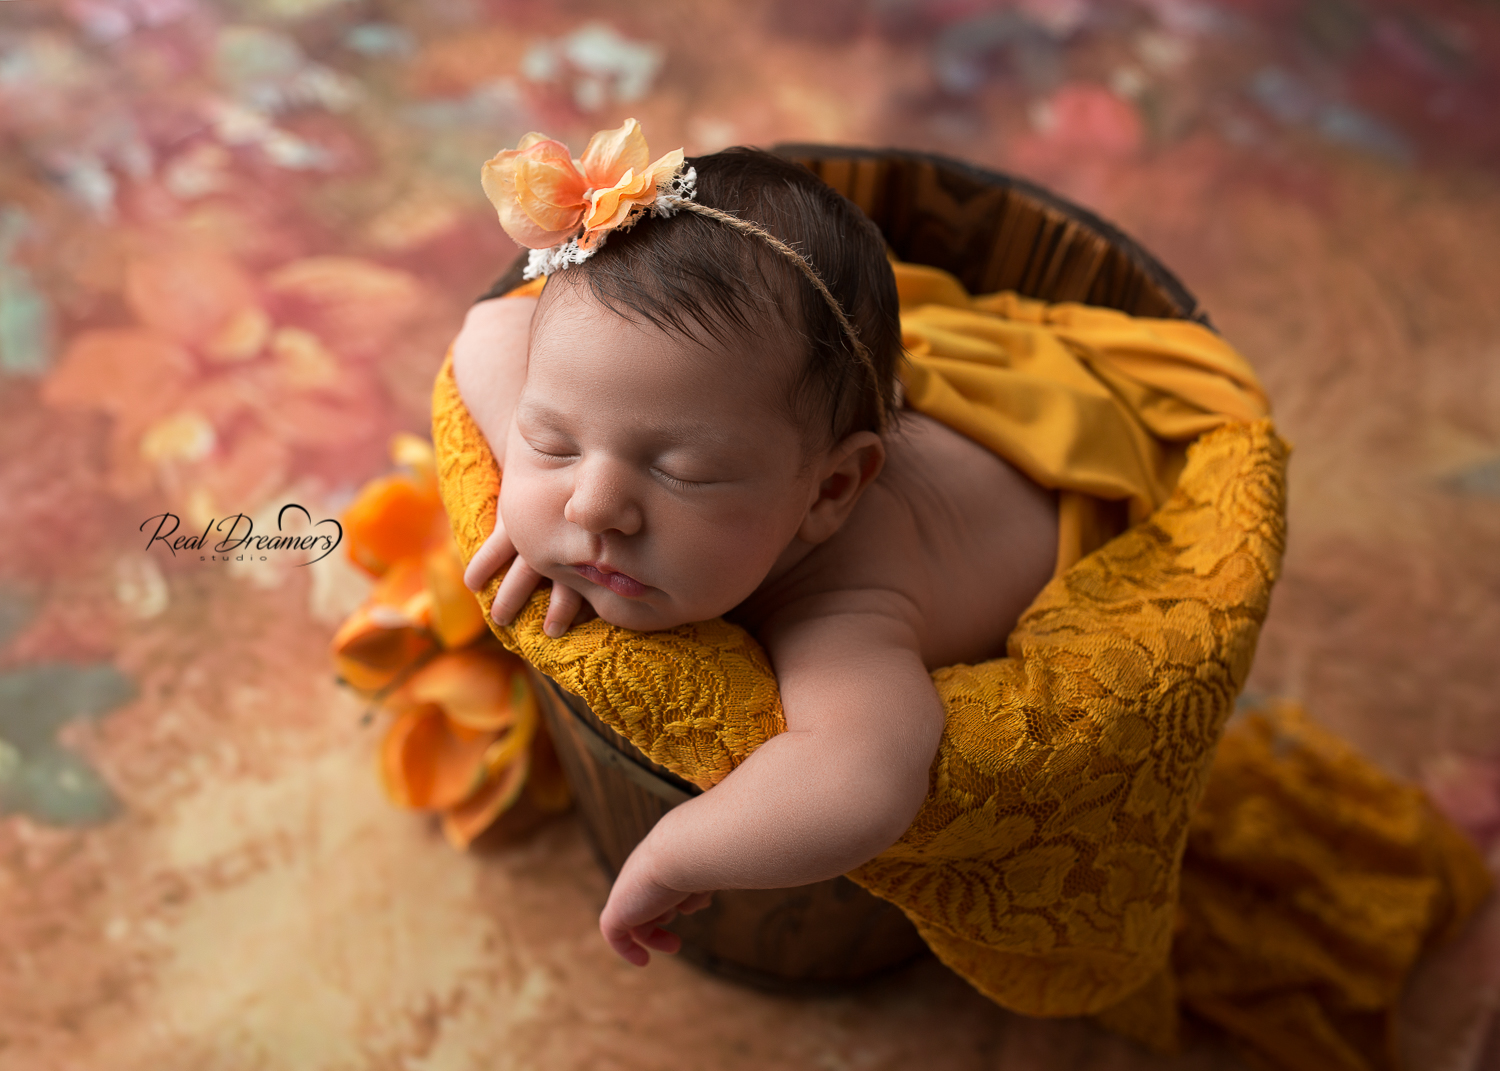 servizio fotografico neonata - newborn